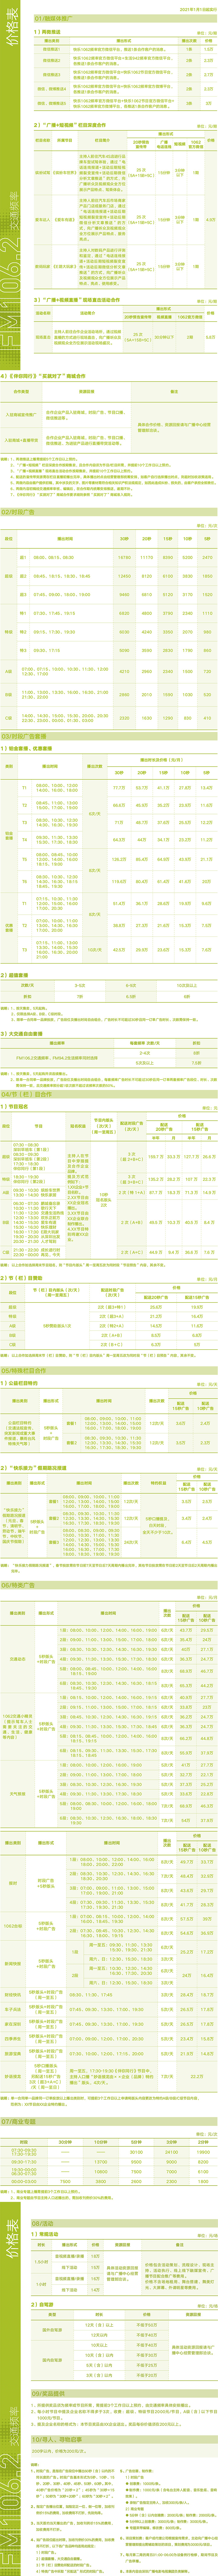 2021深圳人民广播电台交通频率 FM106.2广告报价表.jpg